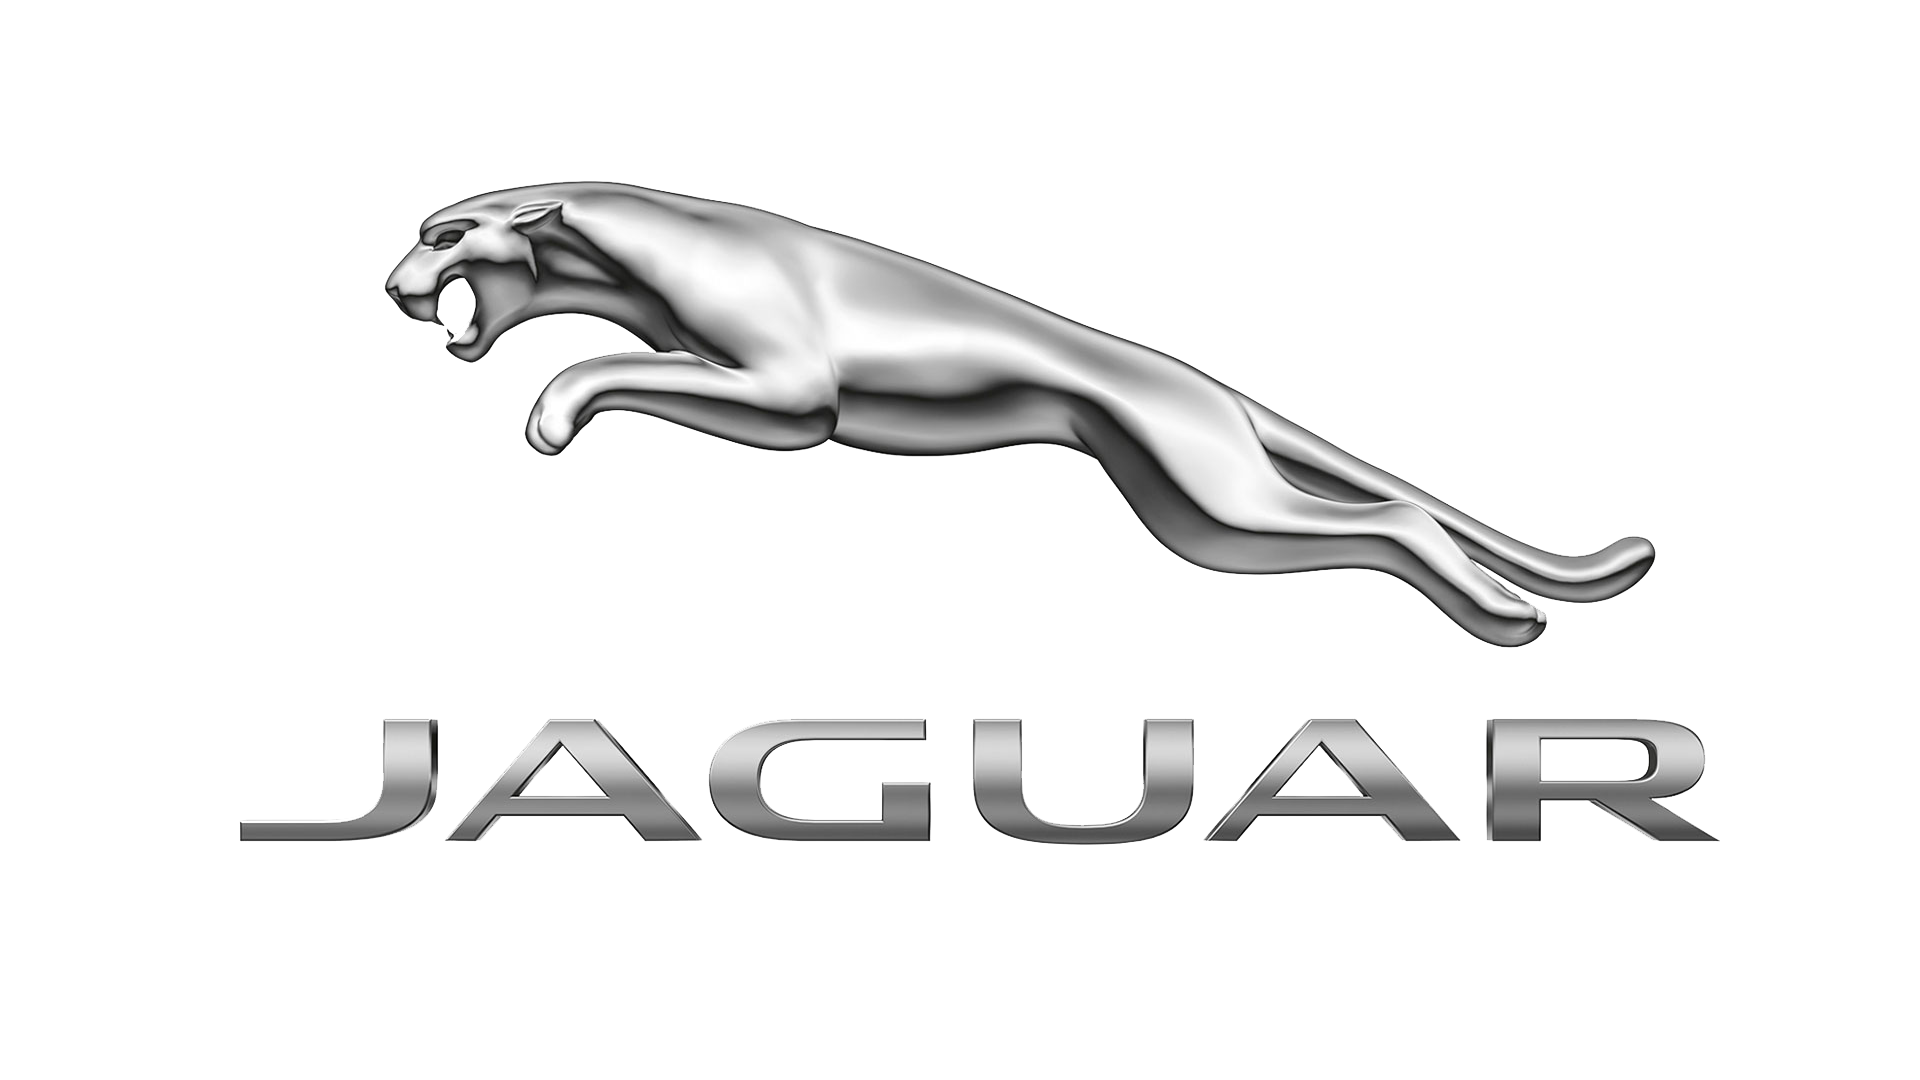 Jaguar-logo-2012-1920x1080.png